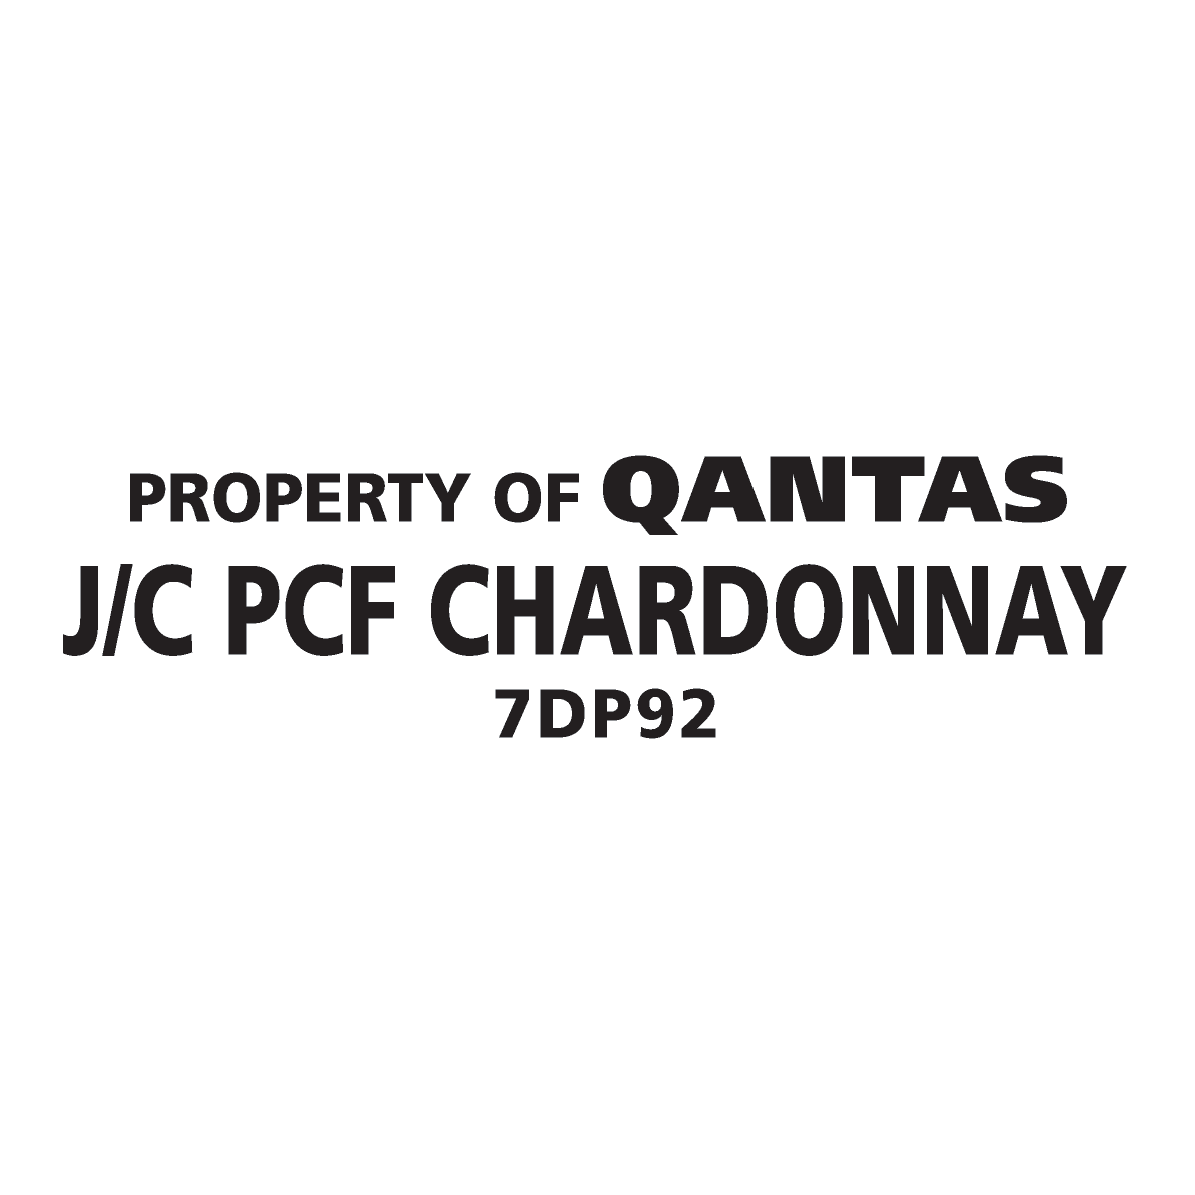 Qantas 7DP92 J/C PCF CHARDONNAY